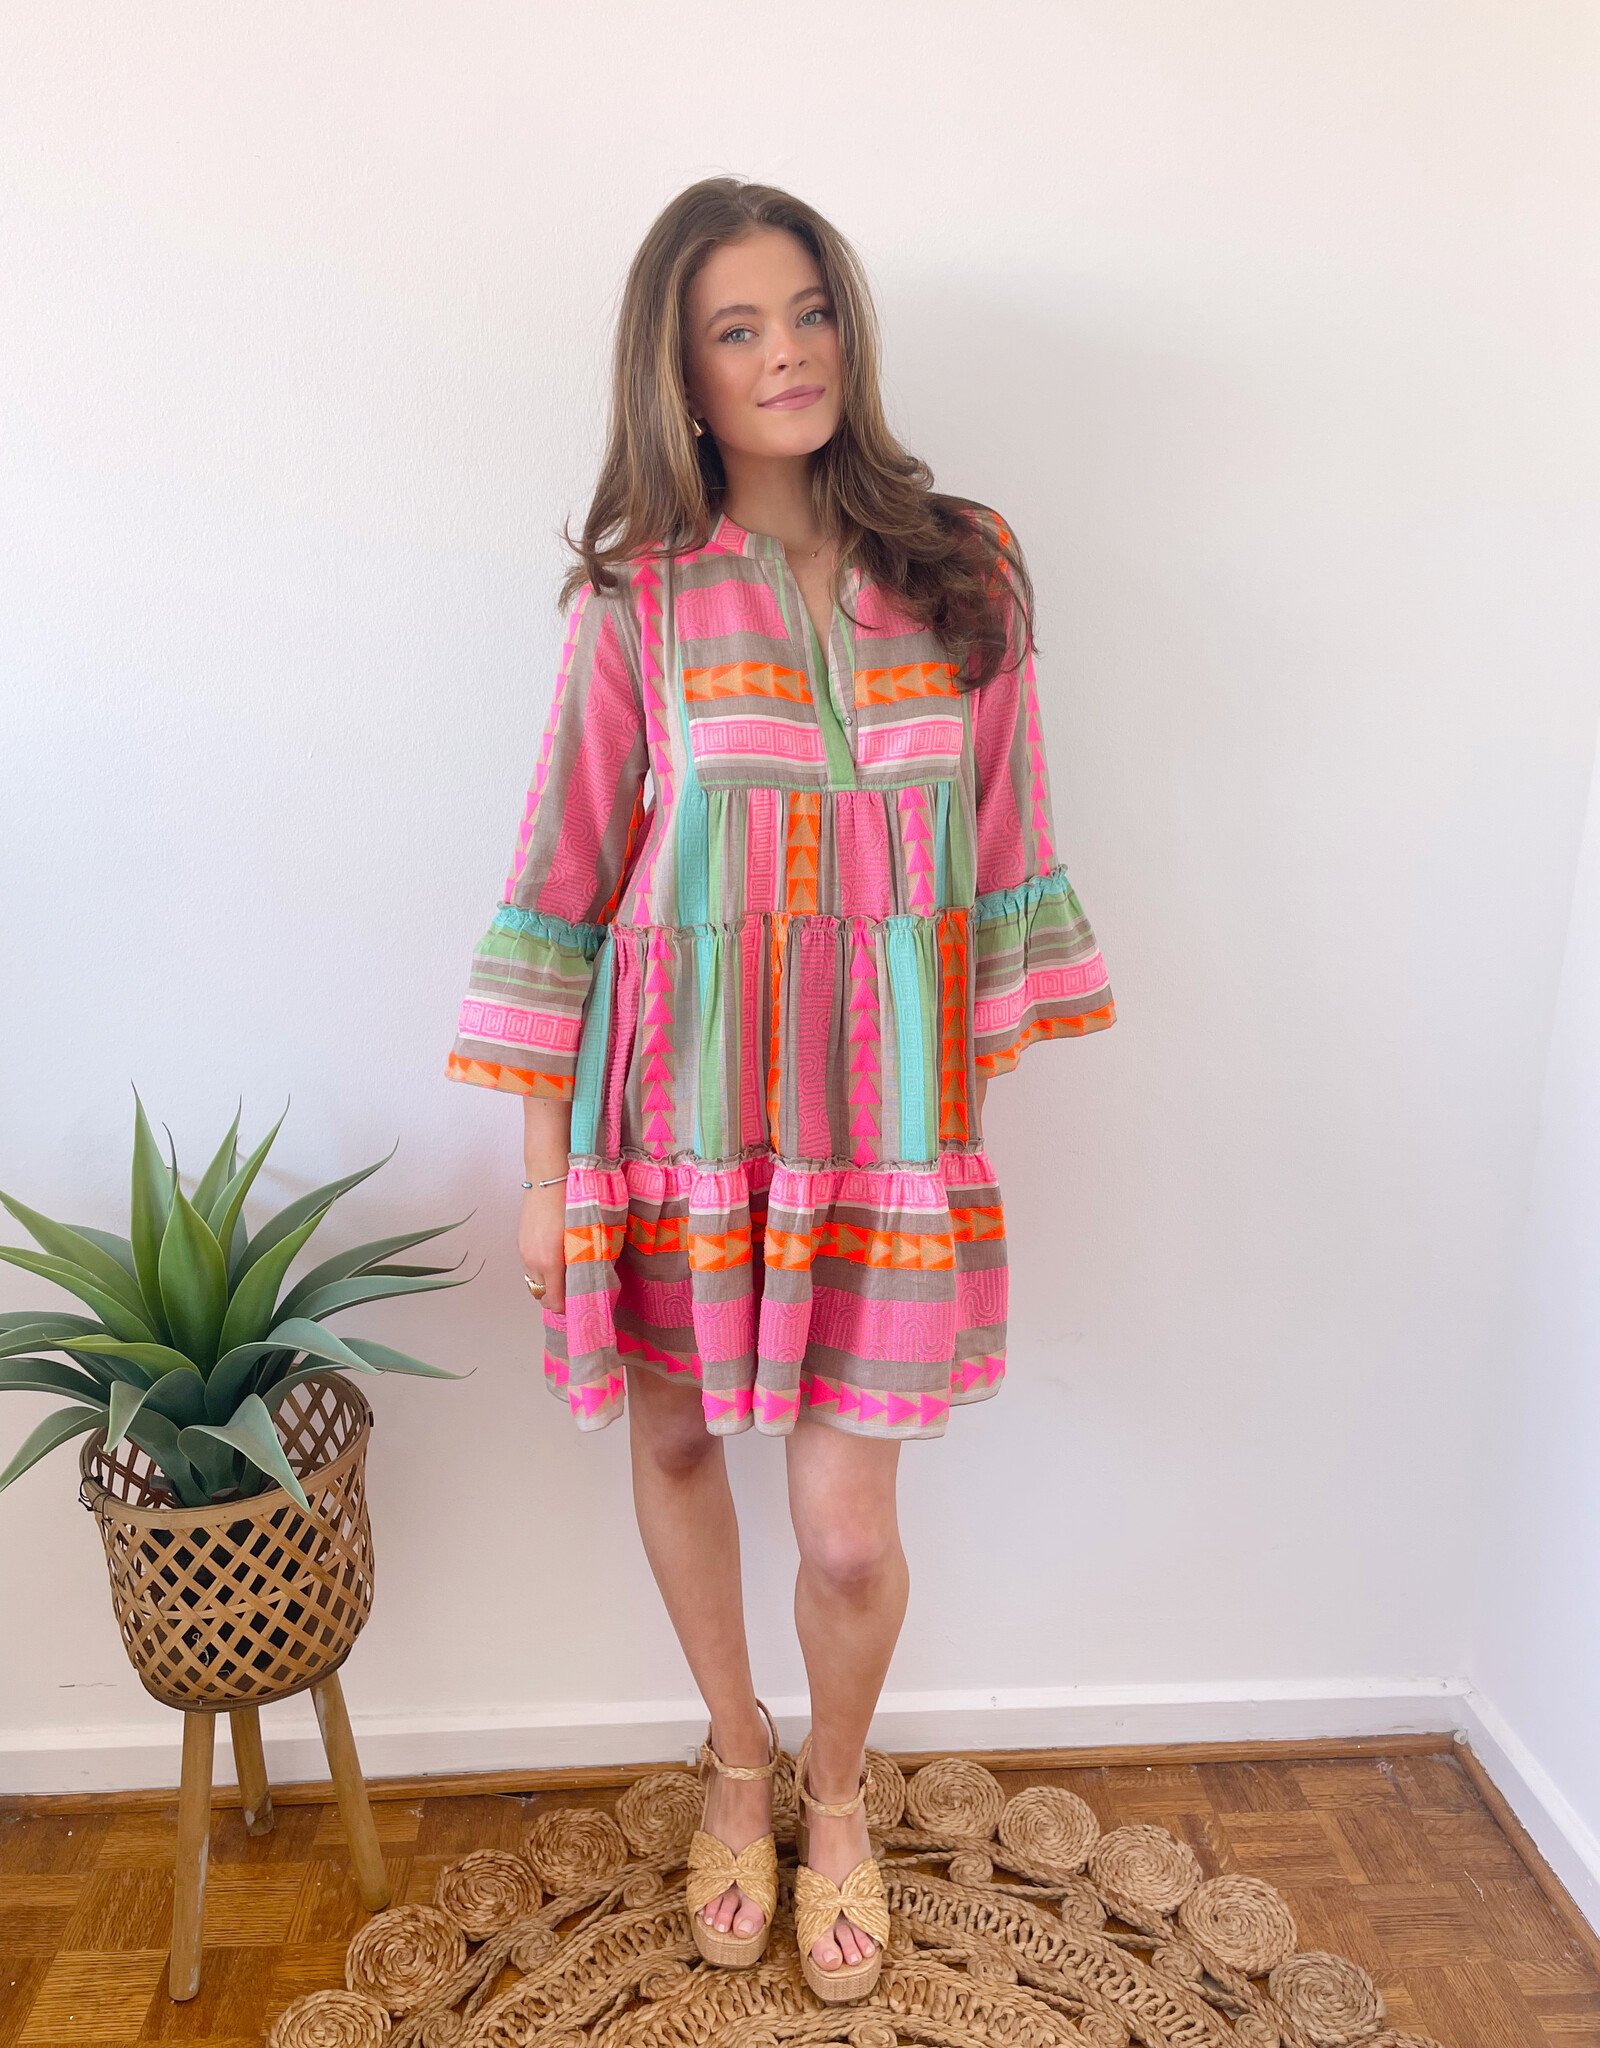 Catalina Long Sleeve Printed Dress